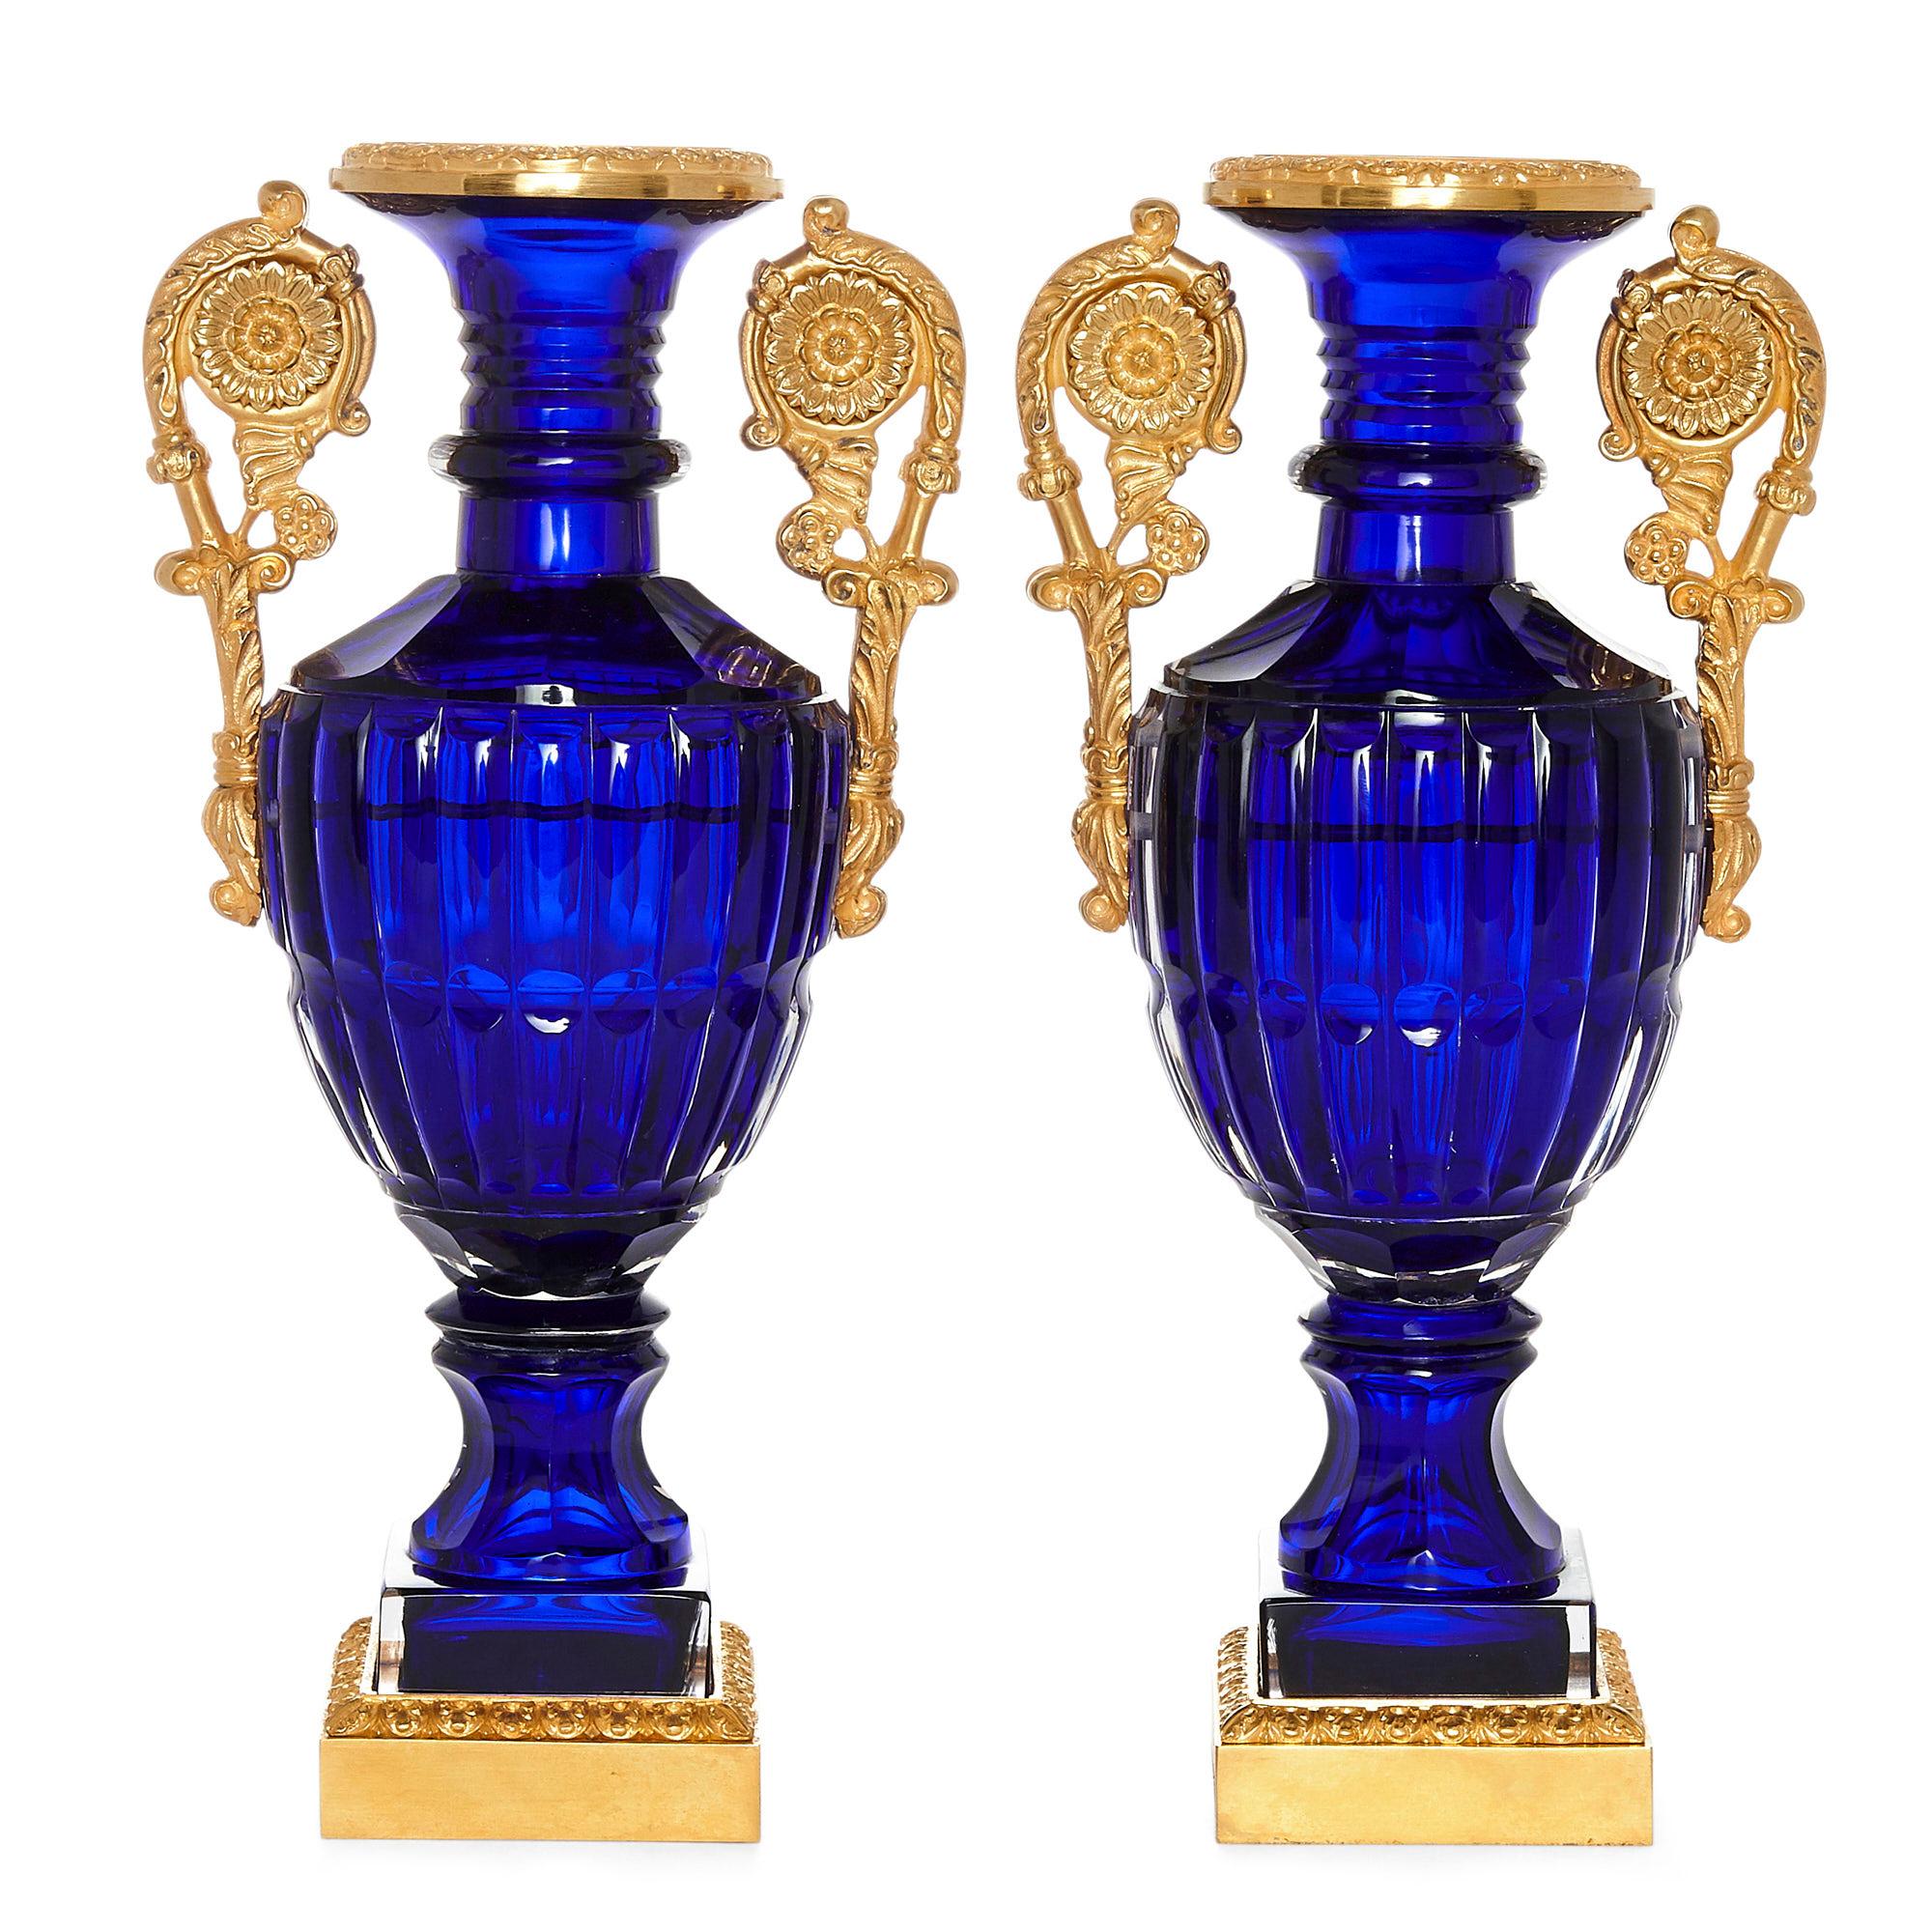 Zwei russische Vasen im neoklassischen Stil aus geschliffenem Glas und Ormolu
Russisch, 20. Jahrhundert
Abmessungen: Höhe 32cm, Breite 16cm, Tiefe 12cm

Jede Vase dieses Paars russischer neoklassischer Vasen hat einen eiförmigen Körper aus